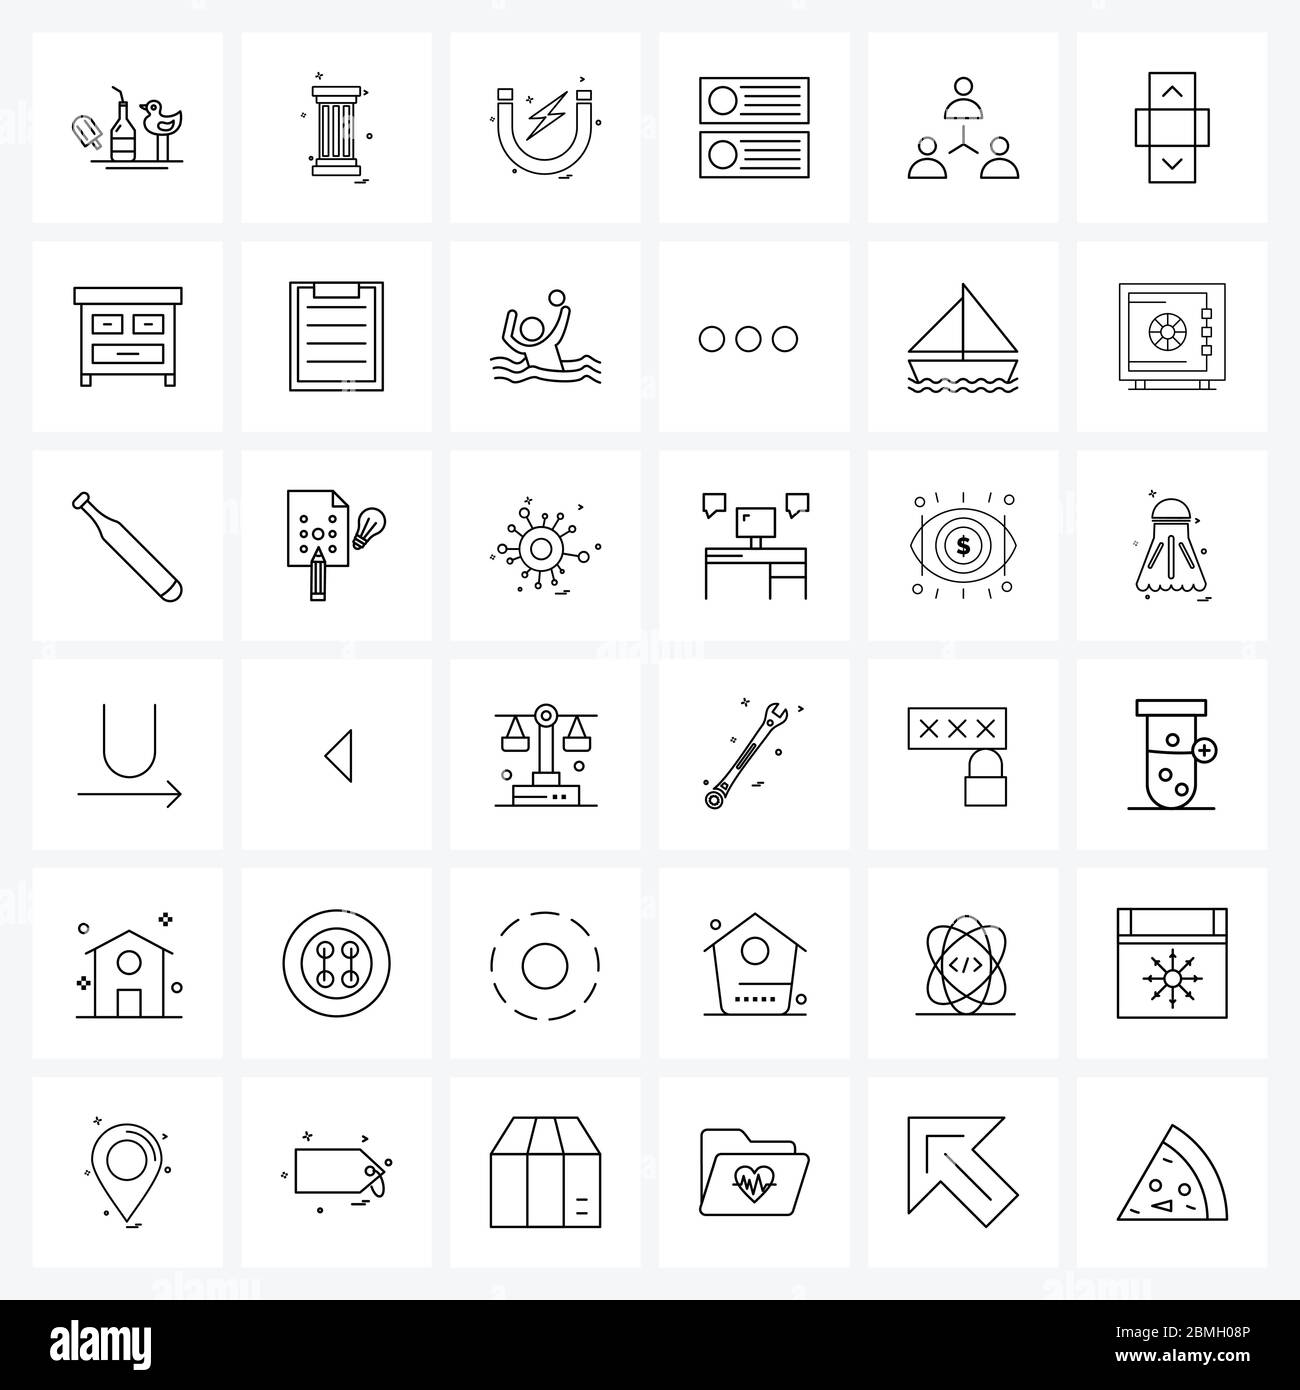 Icône de ligne d'interface utilisateur mobile ensemble de 36 pictogrammes modernes d'avatar, serveur, aimant, réseau, données Illustration vectorielle Illustration de Vecteur